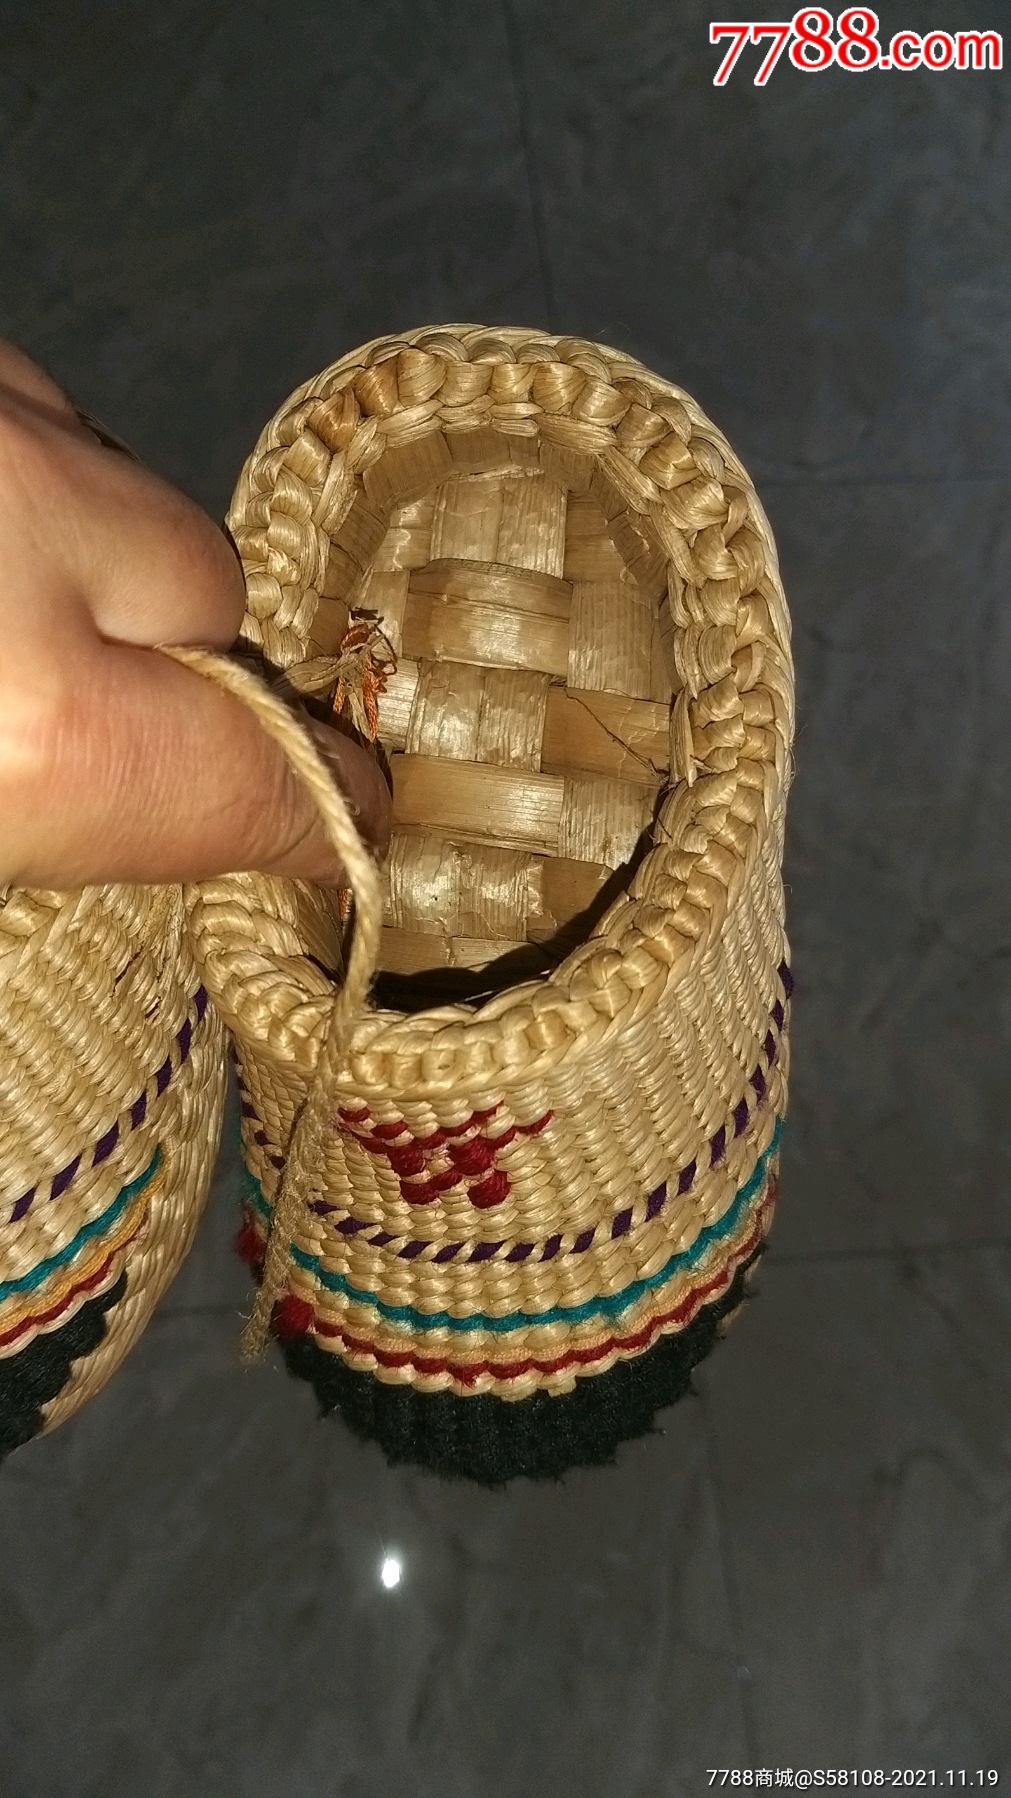 老的编织的婴儿草鞋特别精致